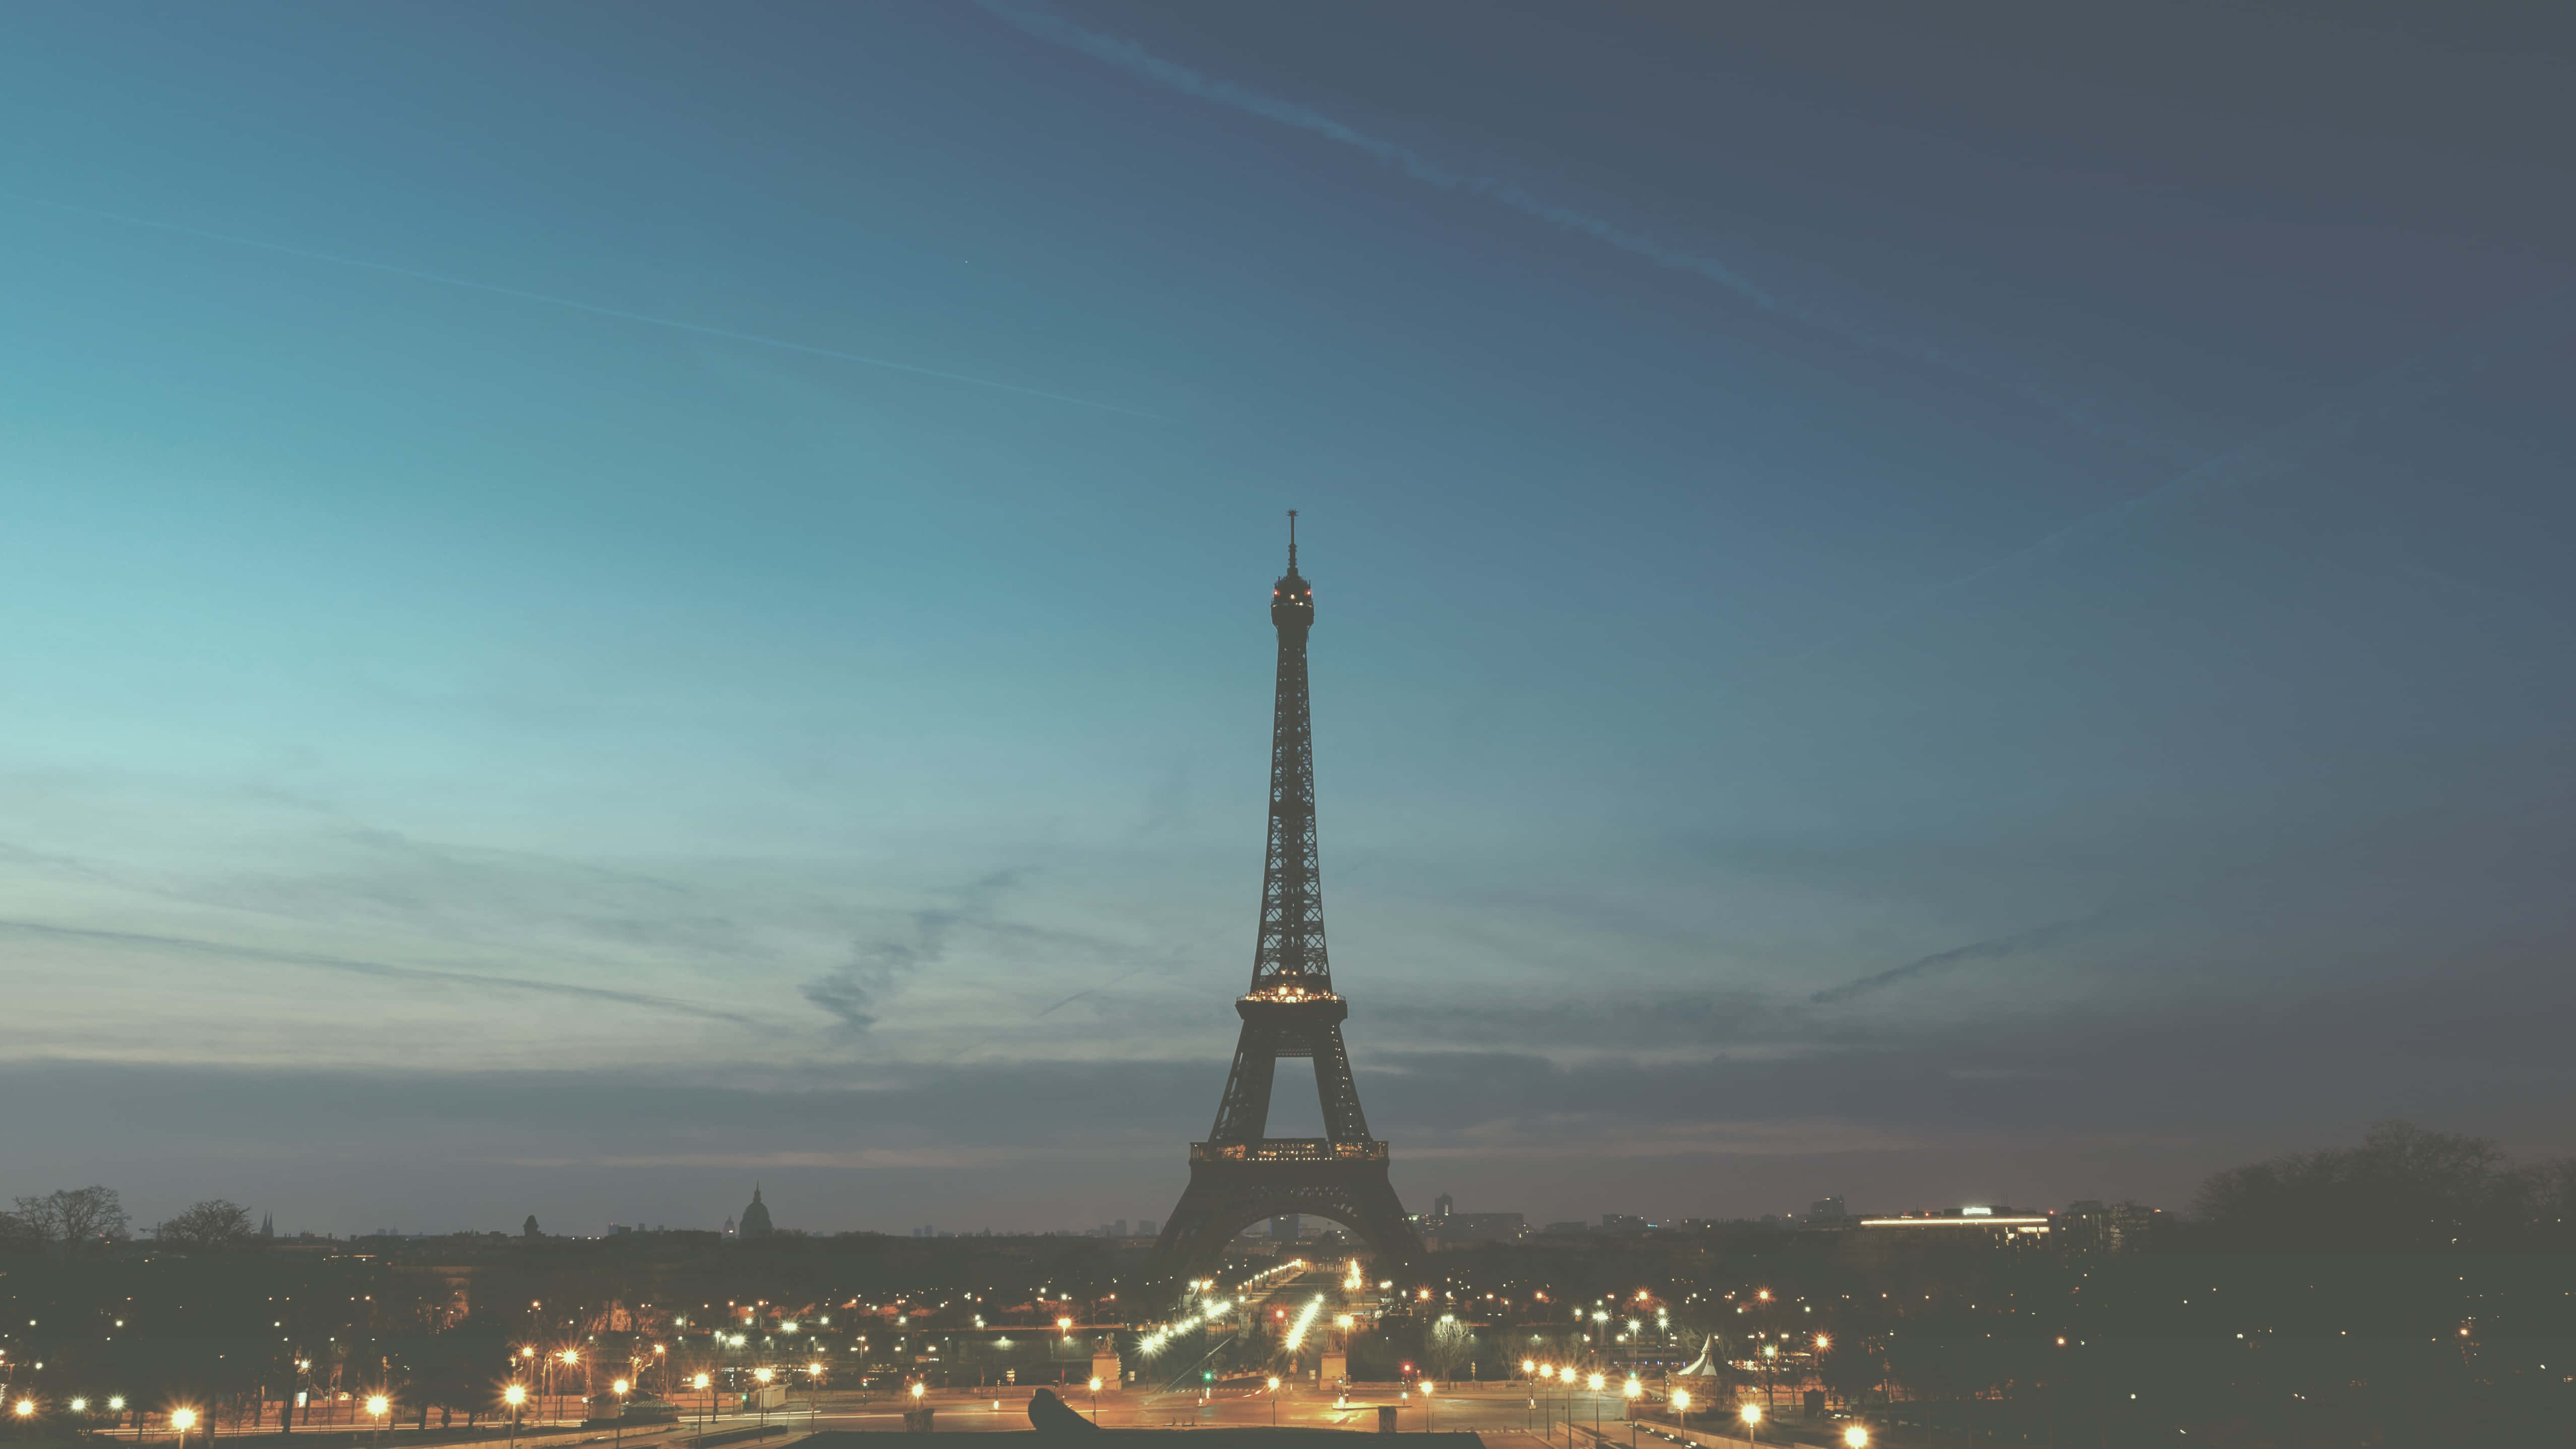 Parigiilluminata Dalla Torre Eiffel Di Notte.